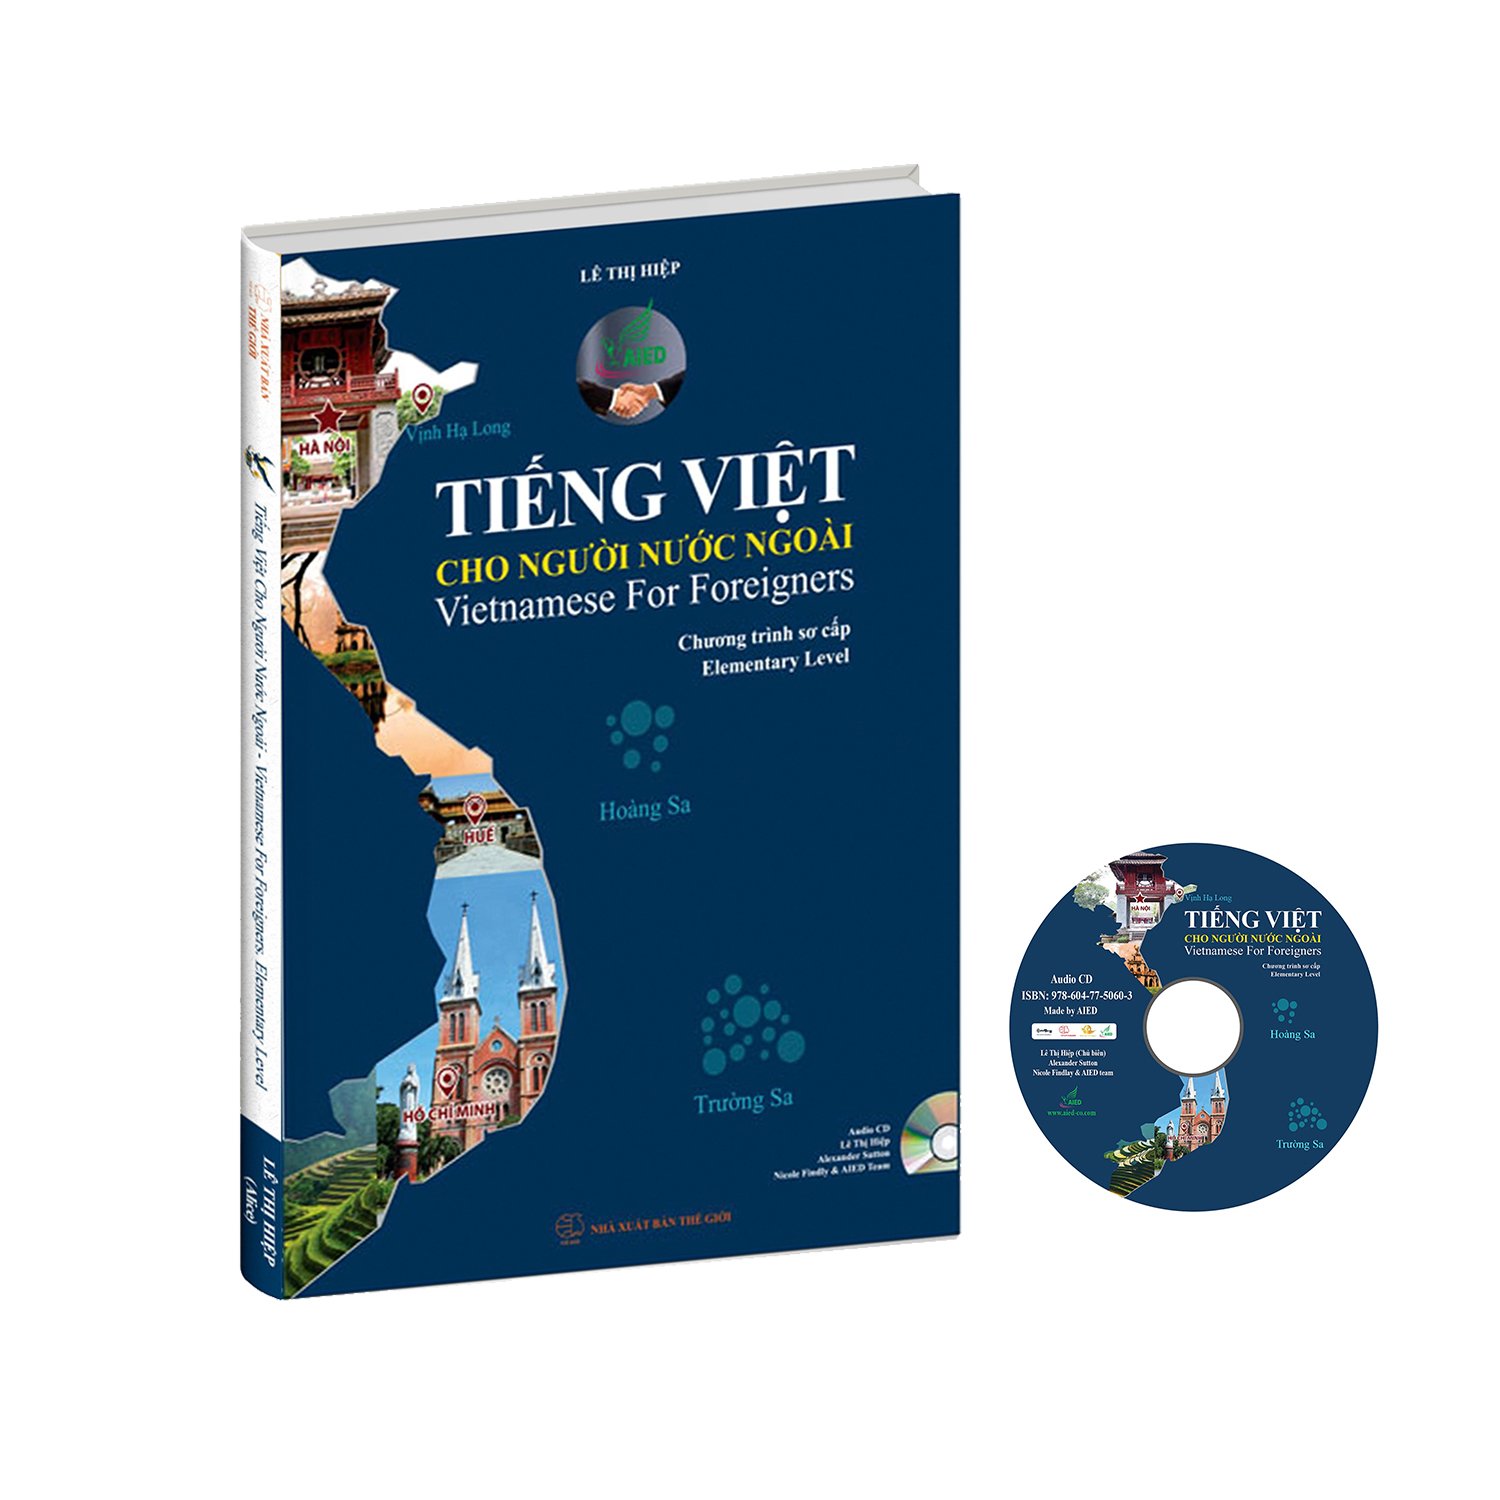 Combo Bộ sách Tiếng Việt cho người nước ngoài chương trình Sơ cấp và Khám phá tiếng Việt hiện đại